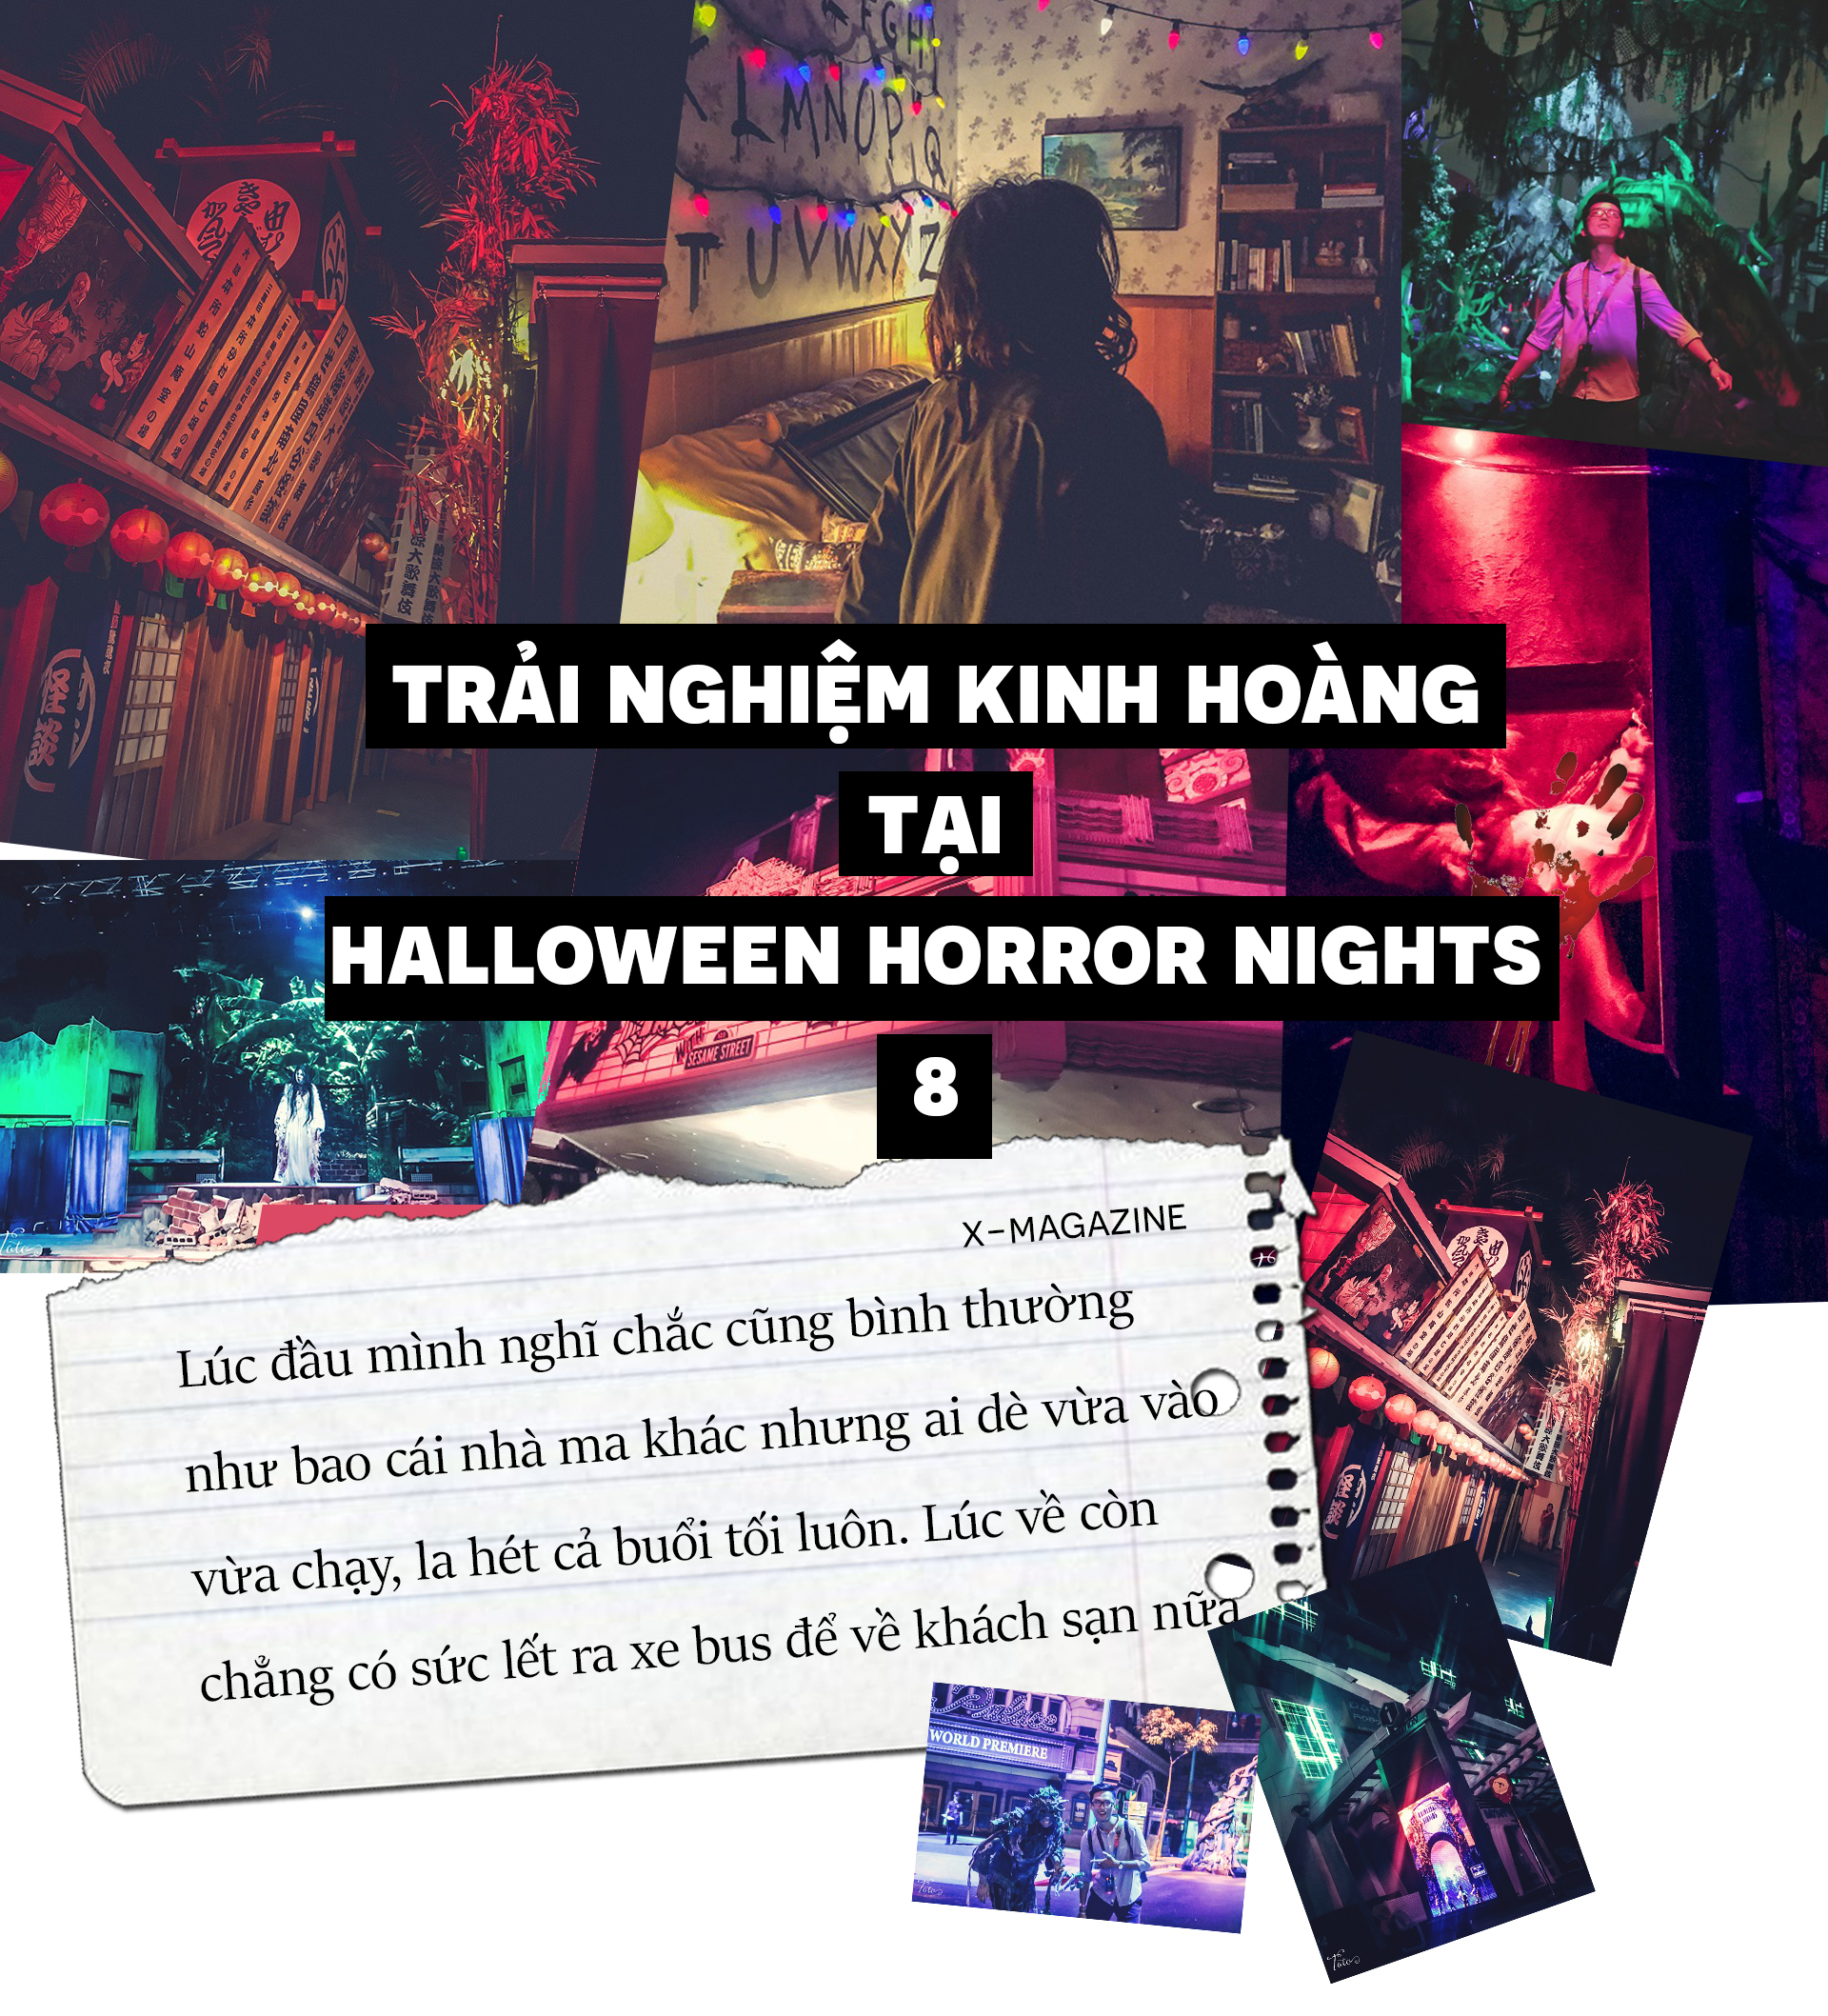 Trải nghiệm "ám ảnh kinh hoàng" đến độ rớt tim ở Halloween Horror Nights 8 - Universal Studios Singapore